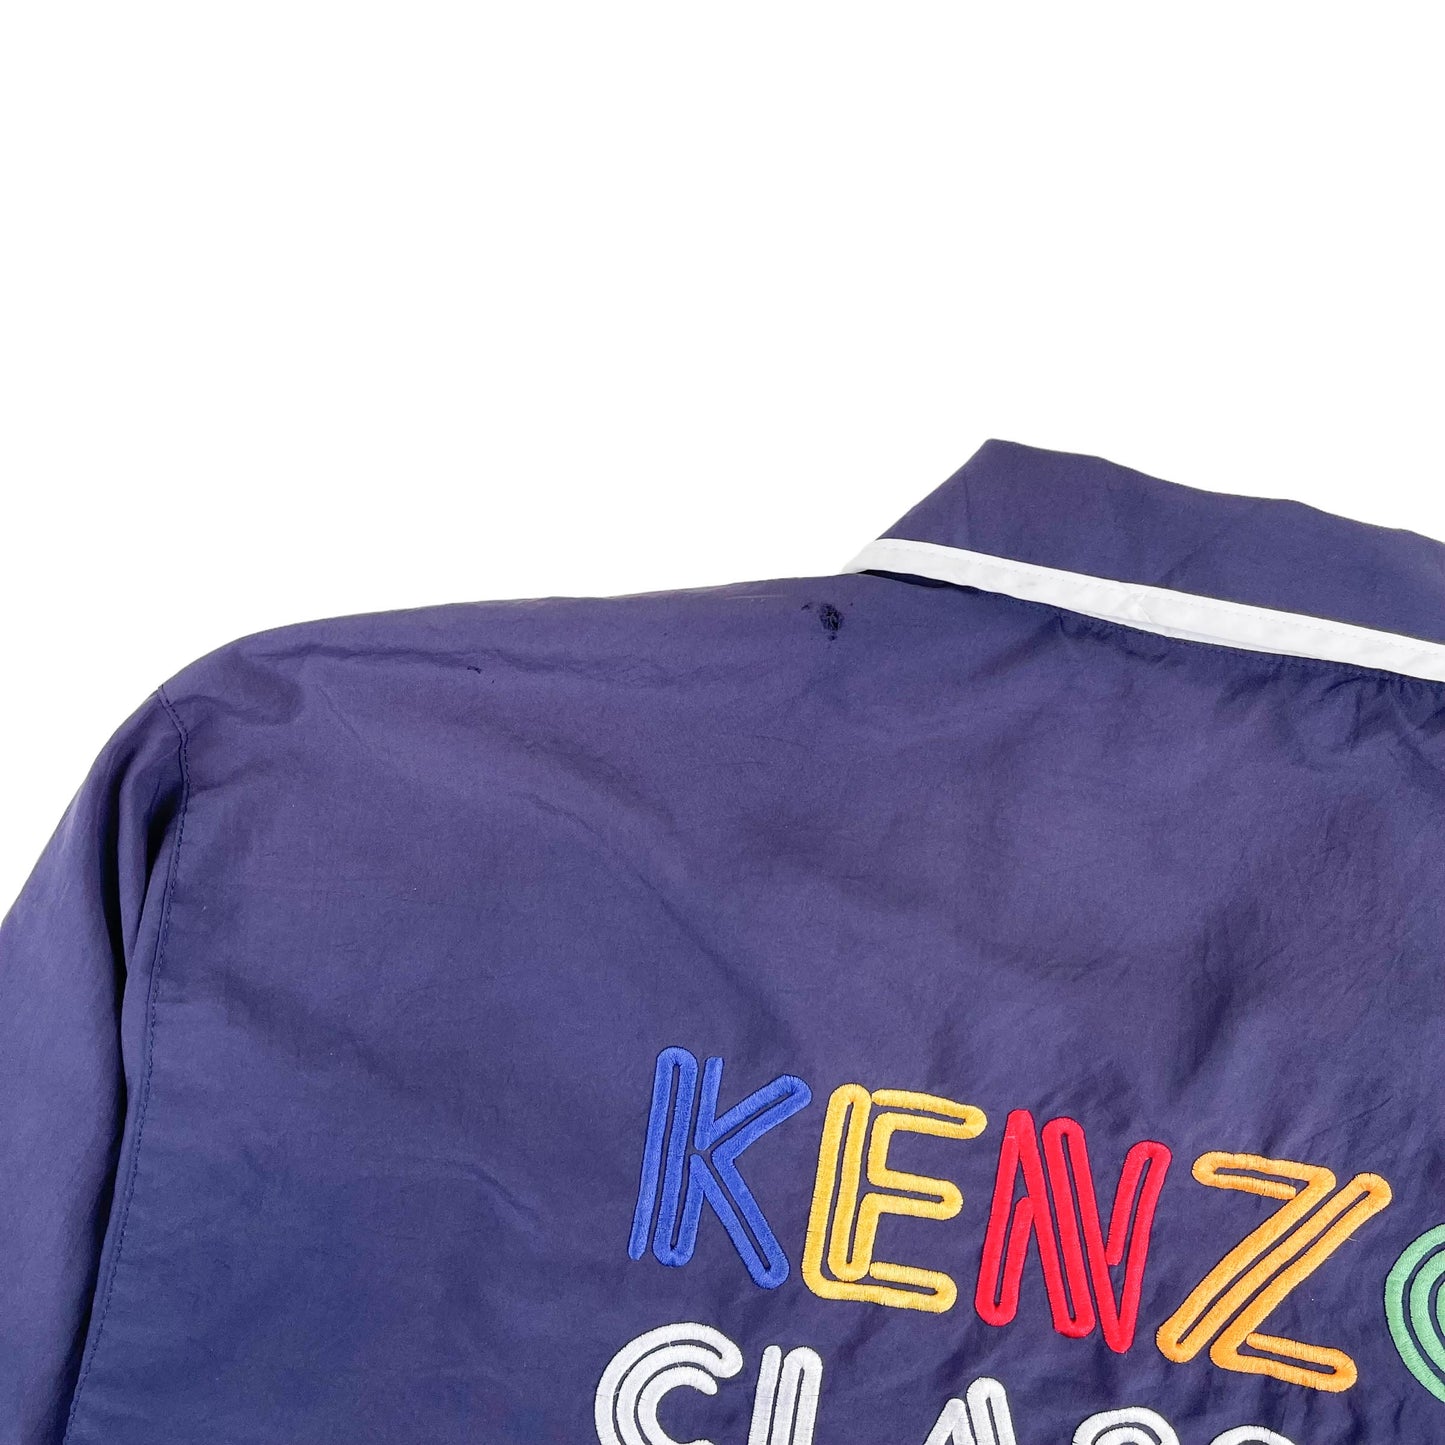 Vintage Kenzo Jacket (XL)